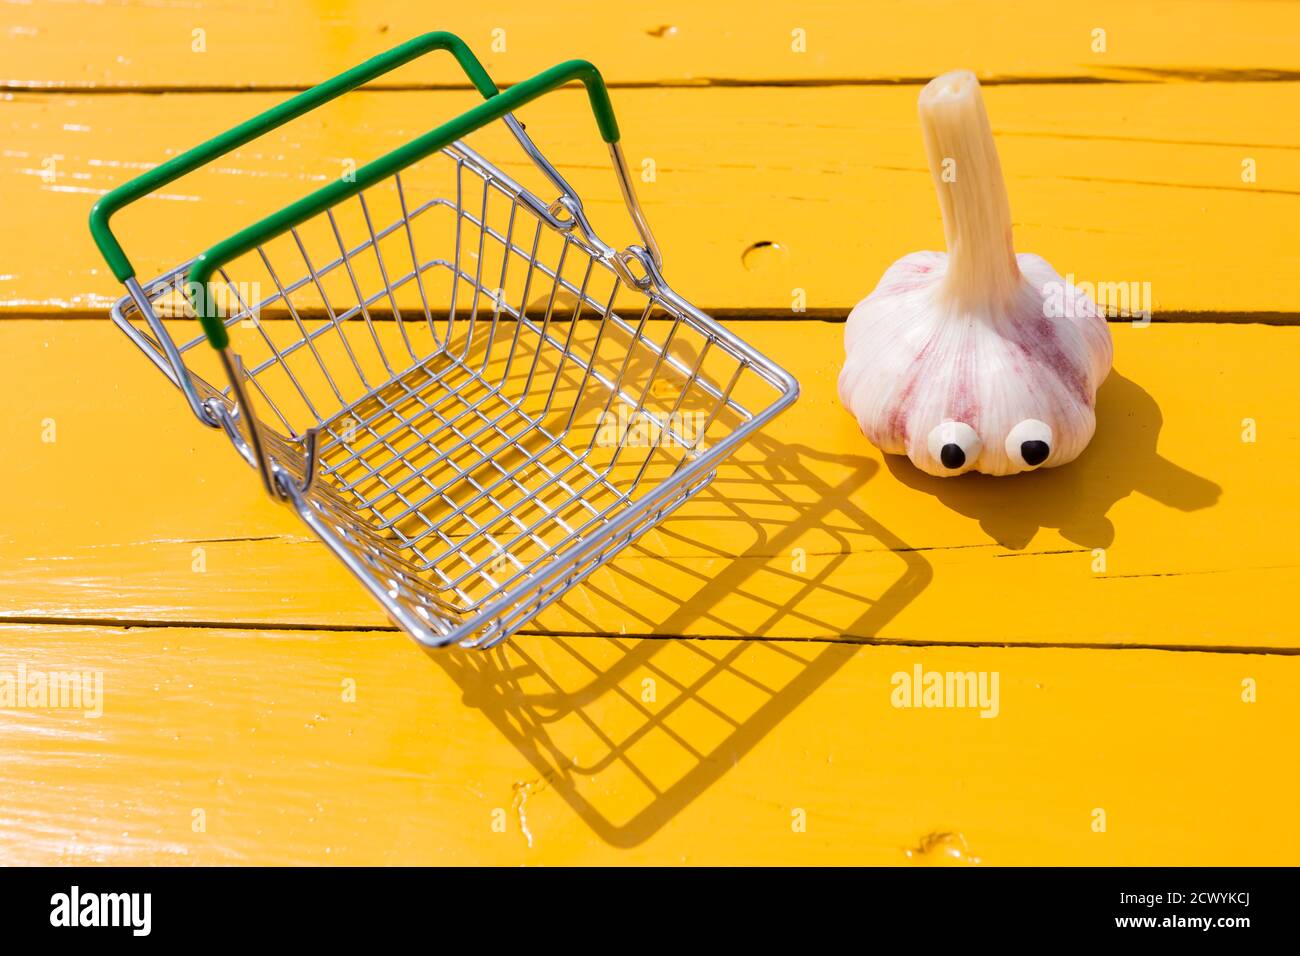 Lustiger Knoblauch mit Augen in der Nähe des kleinen Supermarktkorbs auf gelbem Hintergrund. Vegetarisches Konzept, Kopierraum Stockfoto